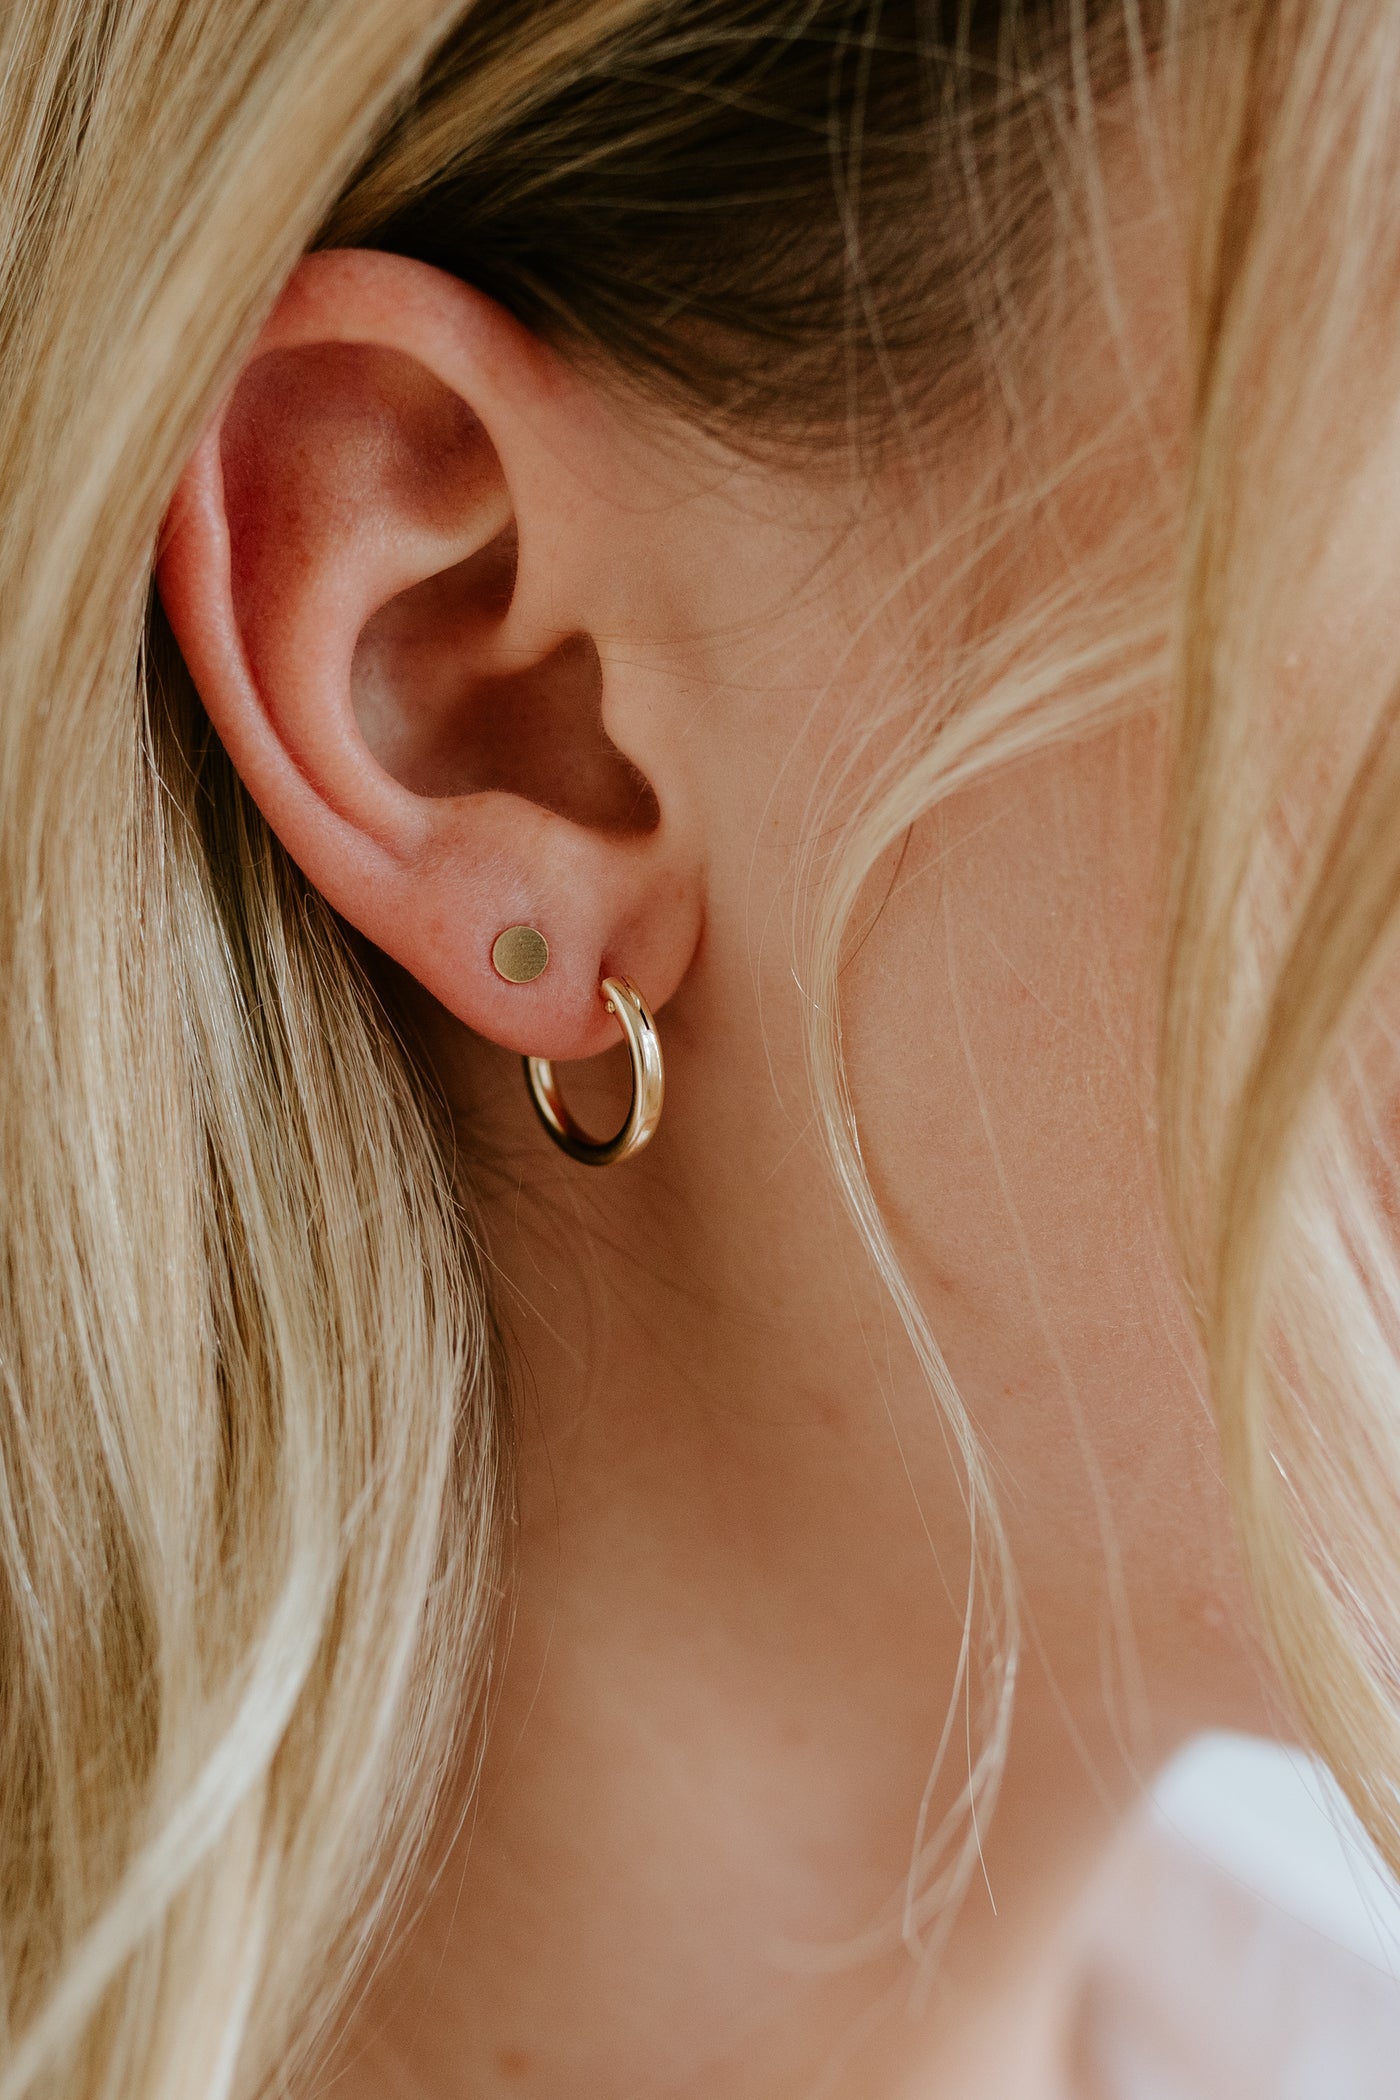 Earrings | Jillian Leigh Jewellery